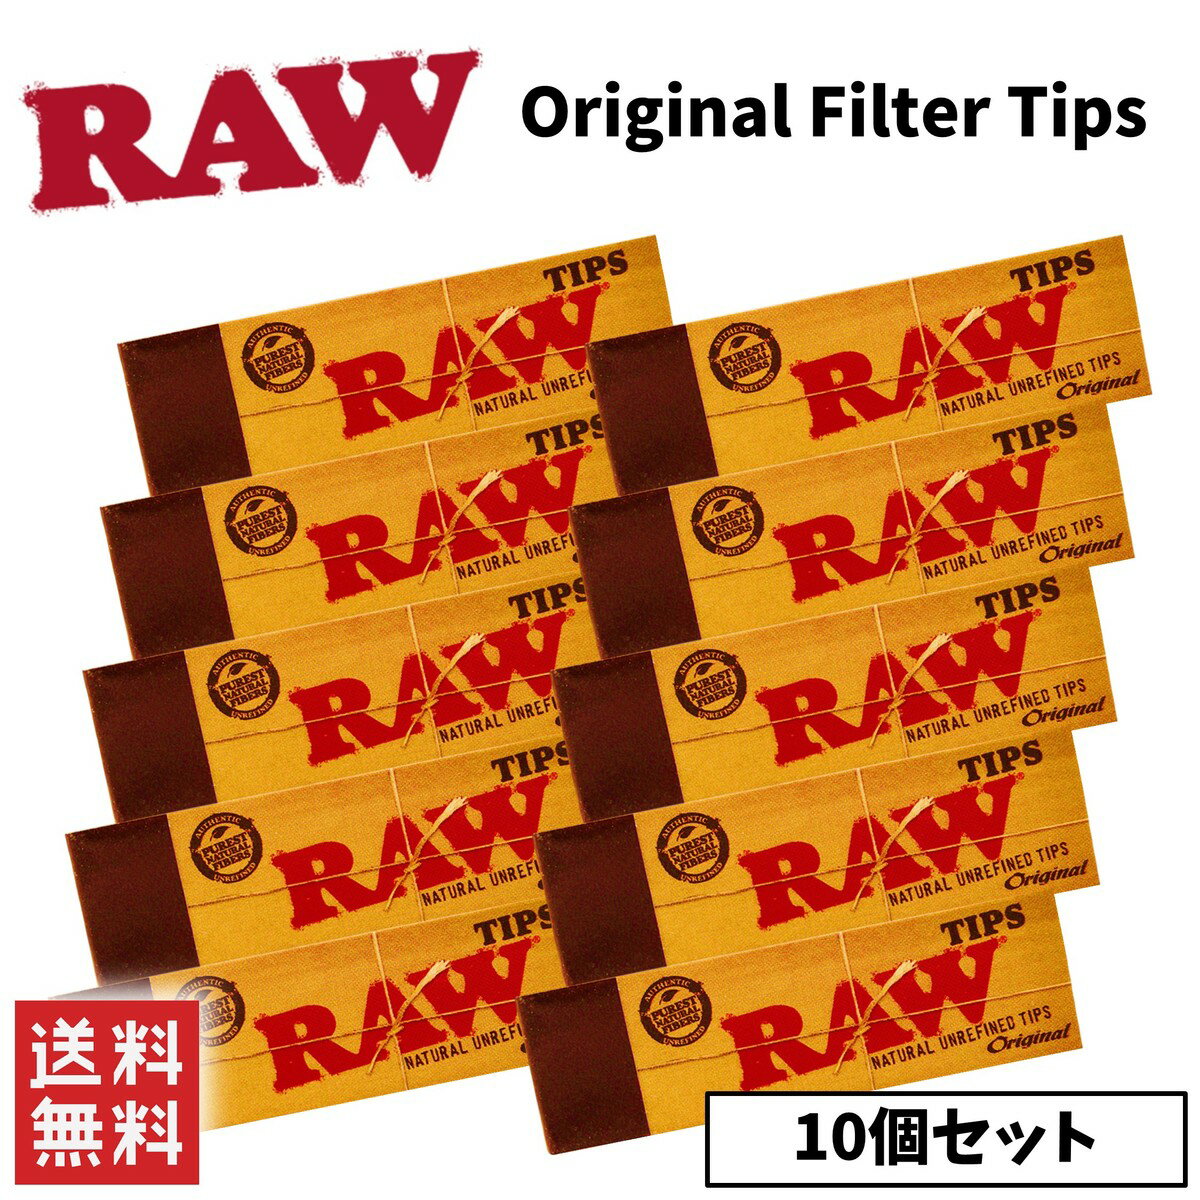 RAW Original Filter Tips `bv tB^[ 10Zbg i 芪΂ [` y[p[